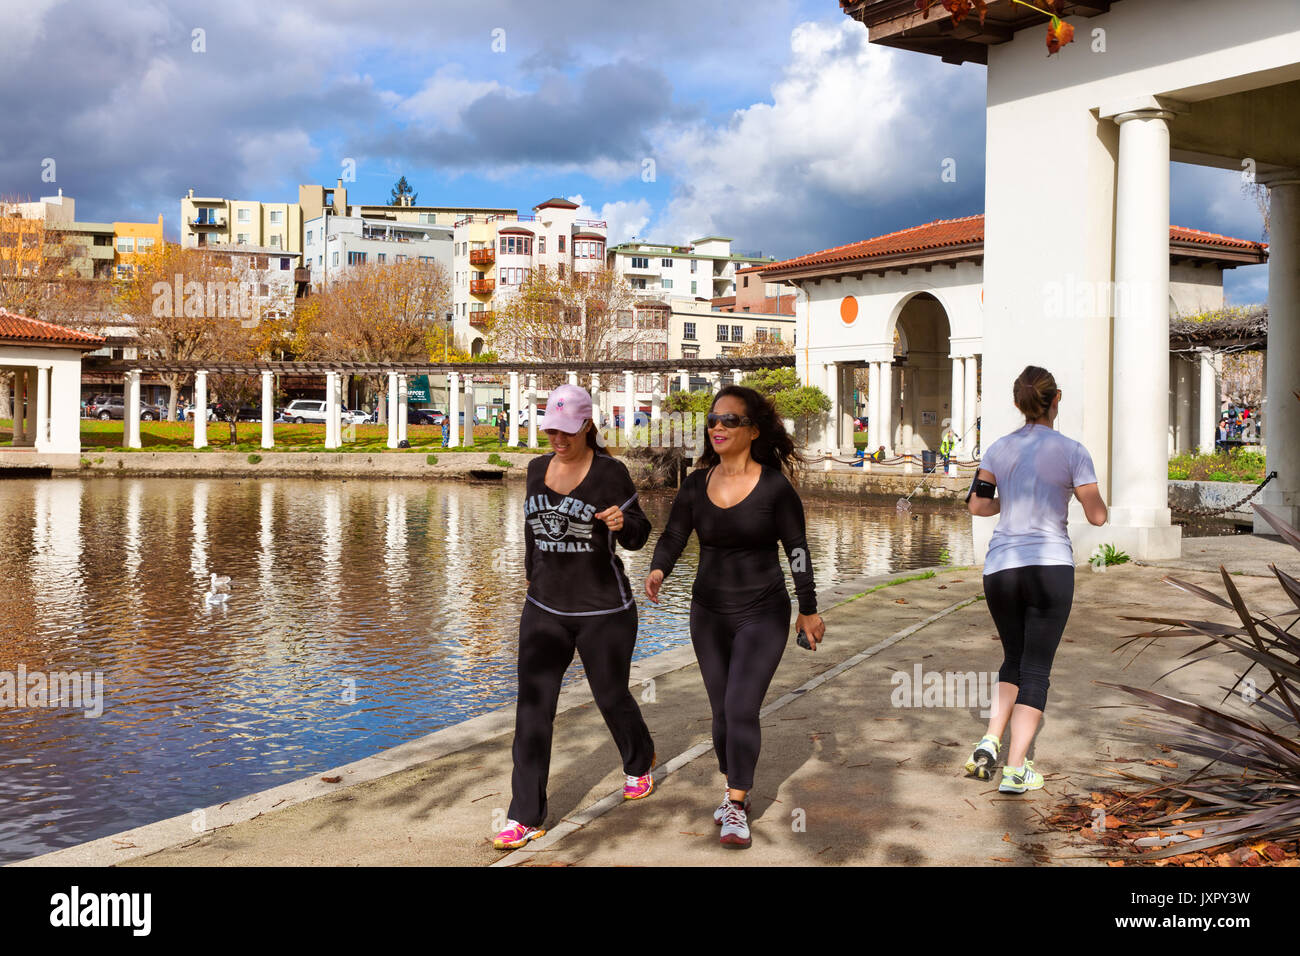 OAKLAND, CA-DEC 6, 2014: la gente sulla 3.4 miglio percorso pedonale attorno al Lago Merritt nel centro cittadino di Oakland, una popolare destinazione per passeggiate e jogging Foto Stock